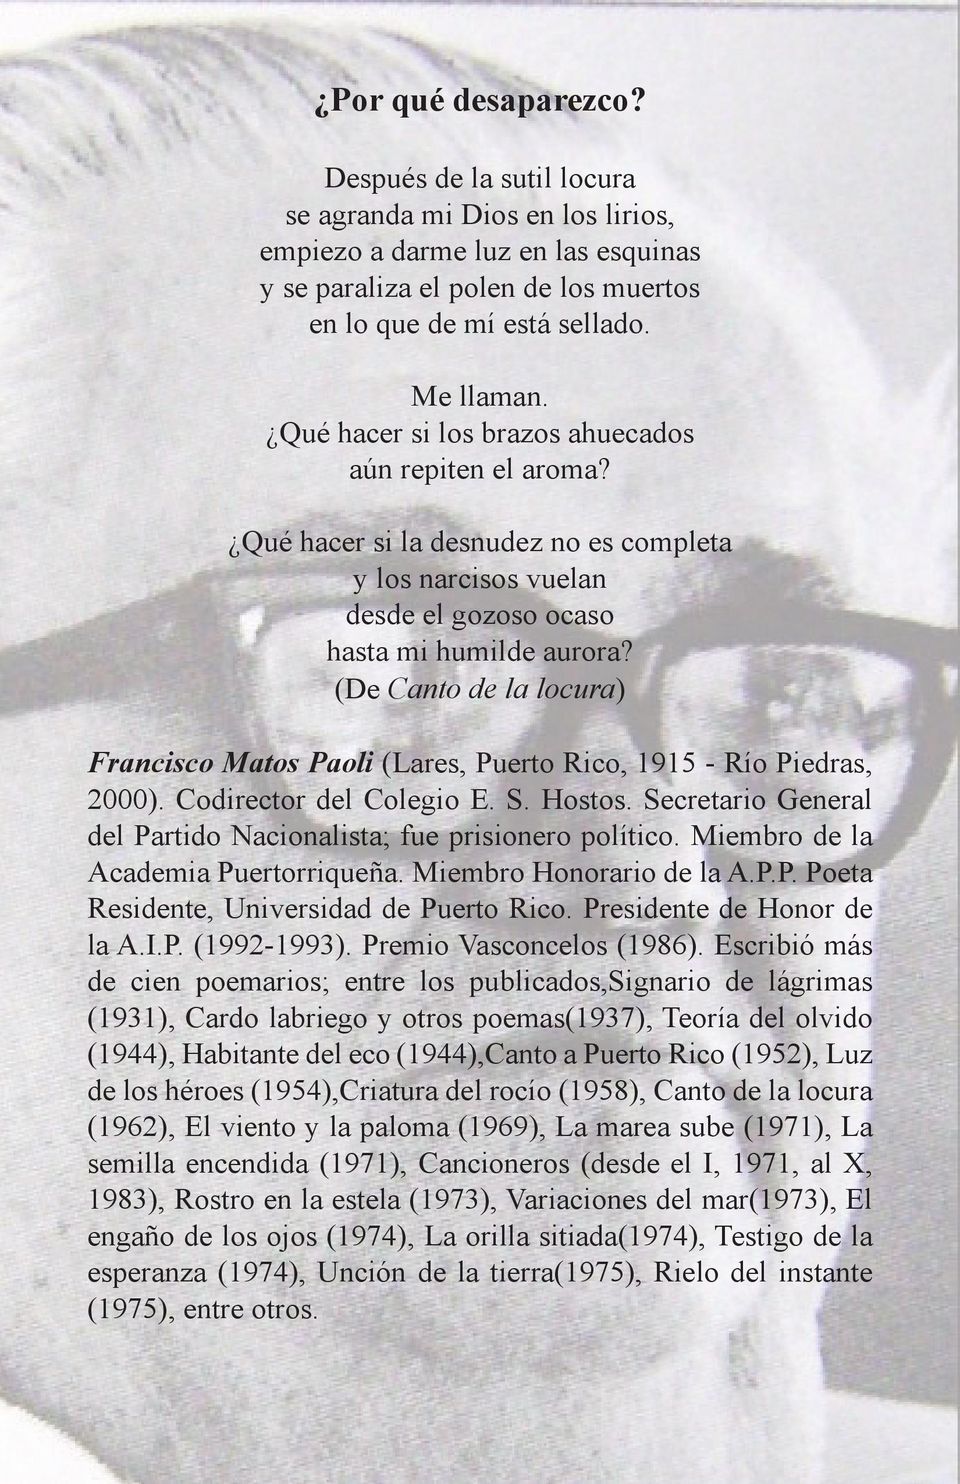 (De Canto de la locura) Francisco Matos Paoli (Lares, Puerto Rico, 1915 - Río Piedras, 2000). Codirector del Colegio E. S. Hostos. Secretario General del Partido Nacionalista; fue prisionero político.